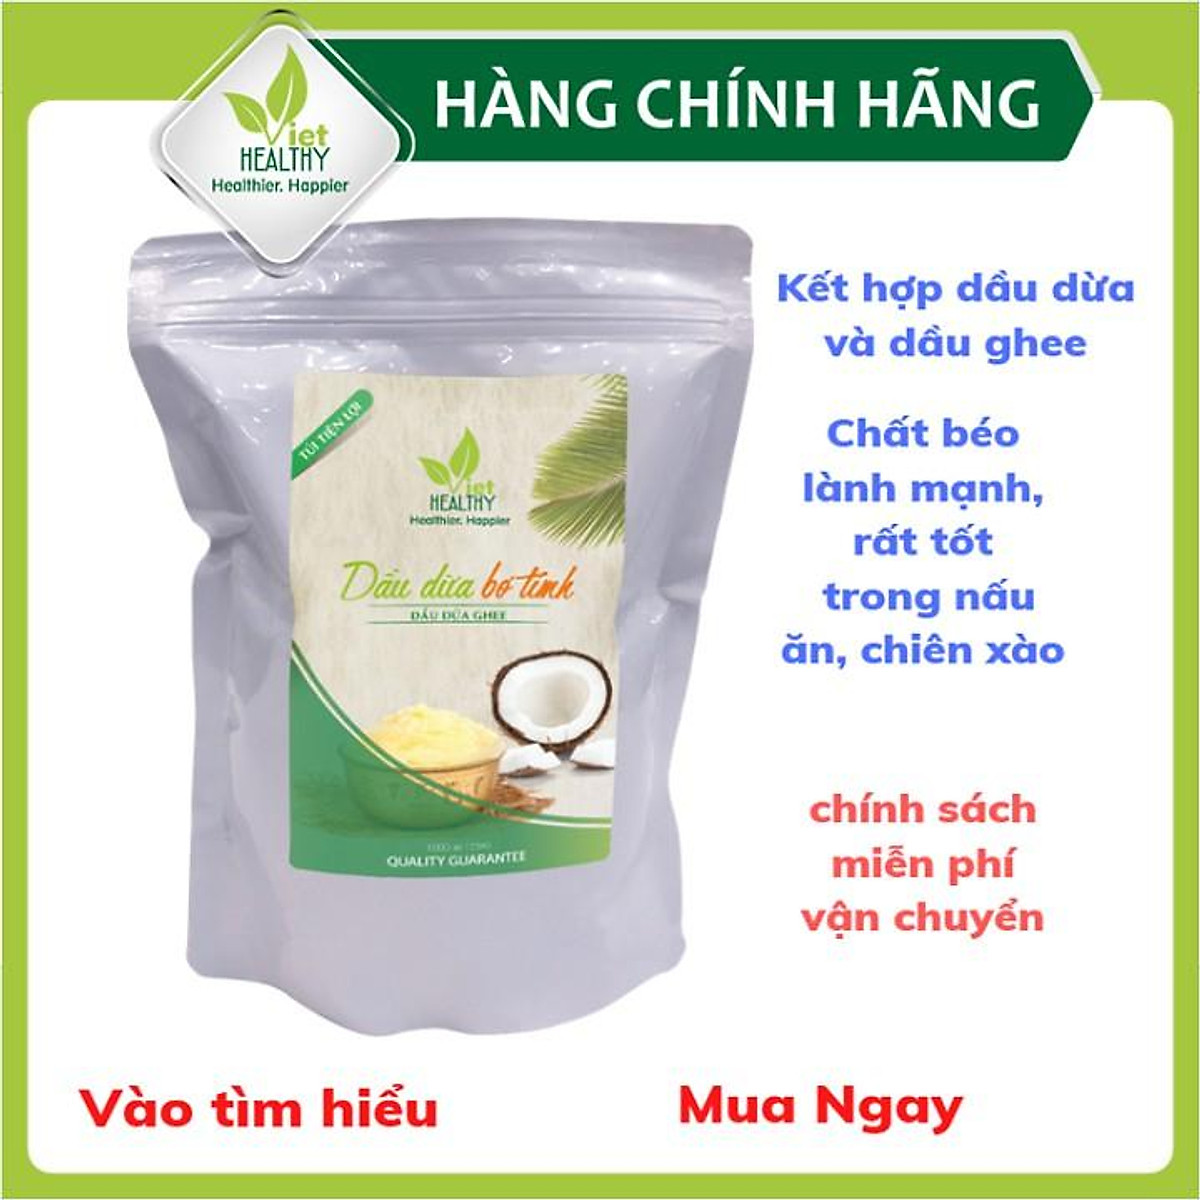 Dầu dừa ghee Viet Healthy 1 lít (túi tiện lợi)